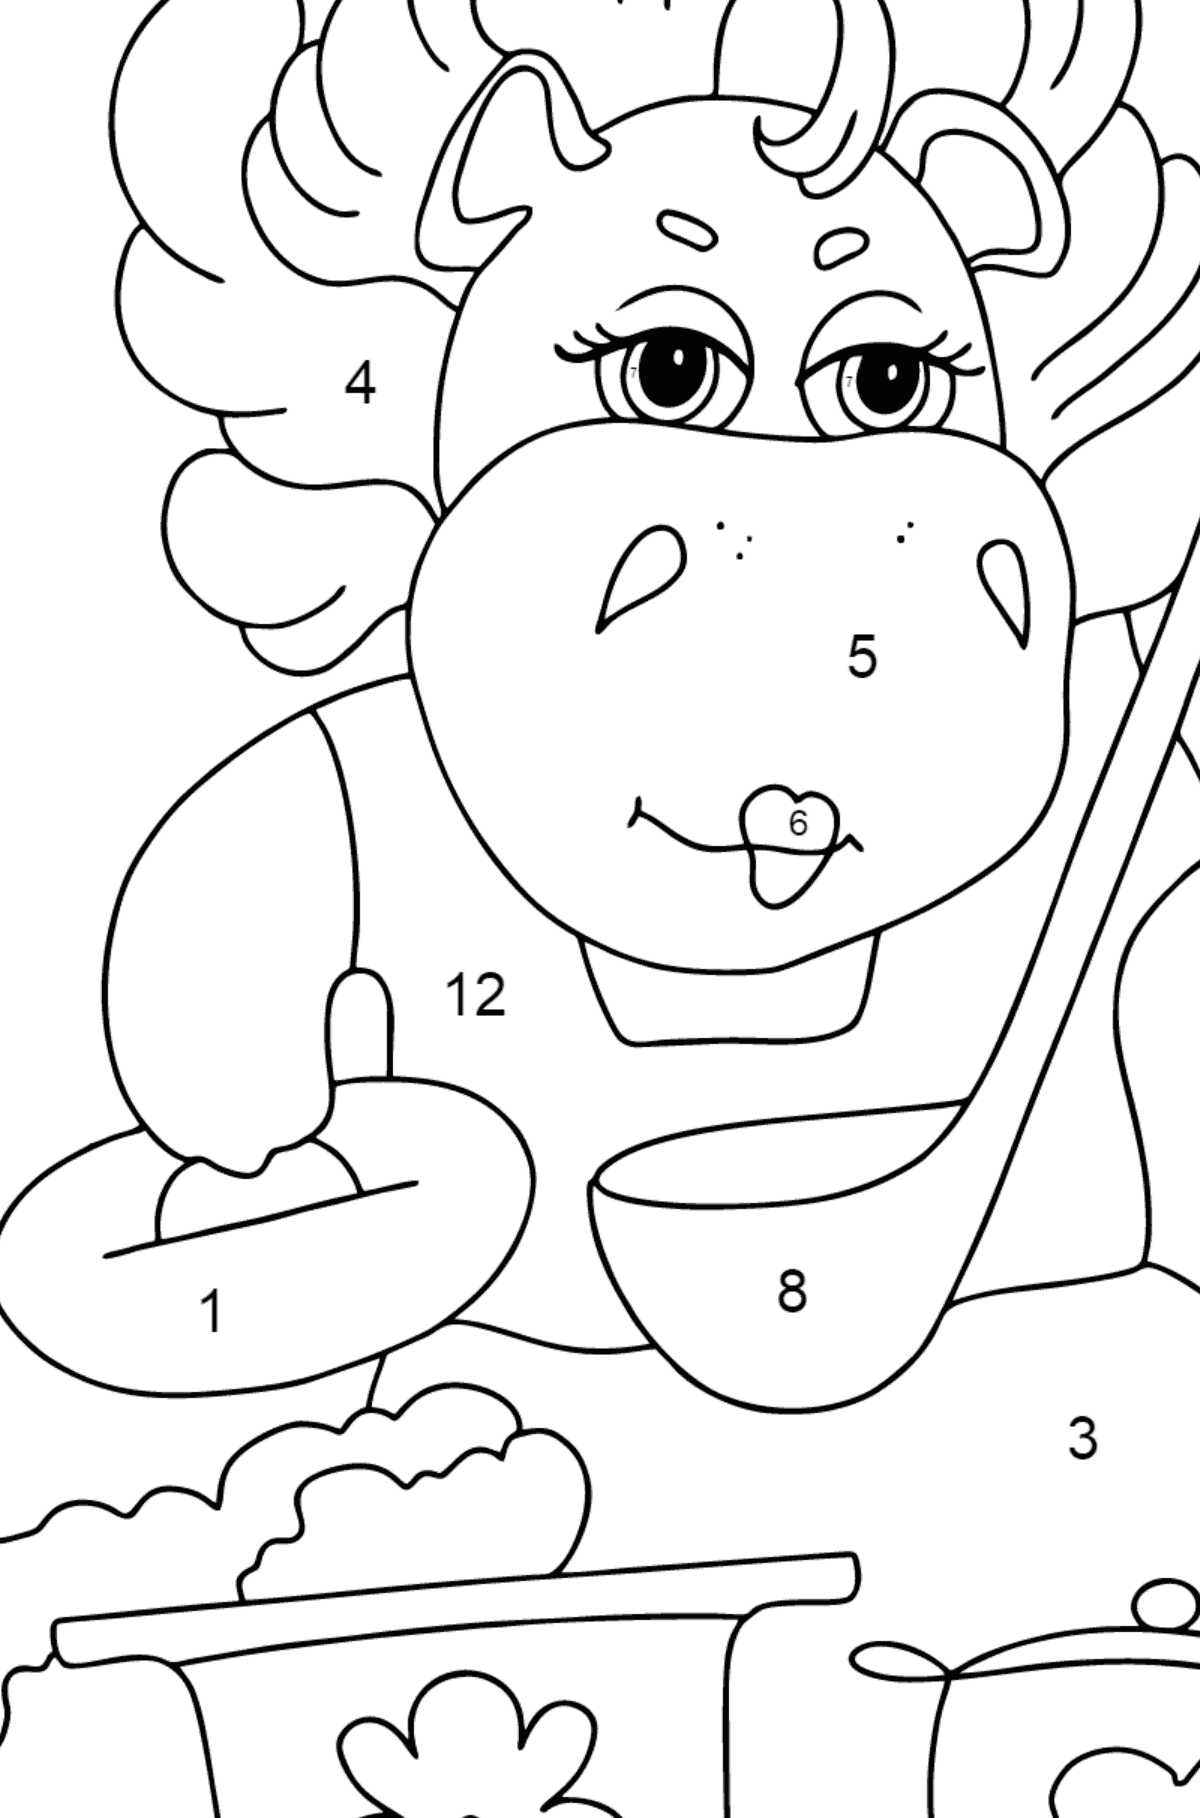 Coloriage Hippopotame magique (simple) - Coloriage par Chiffres pour les Enfants